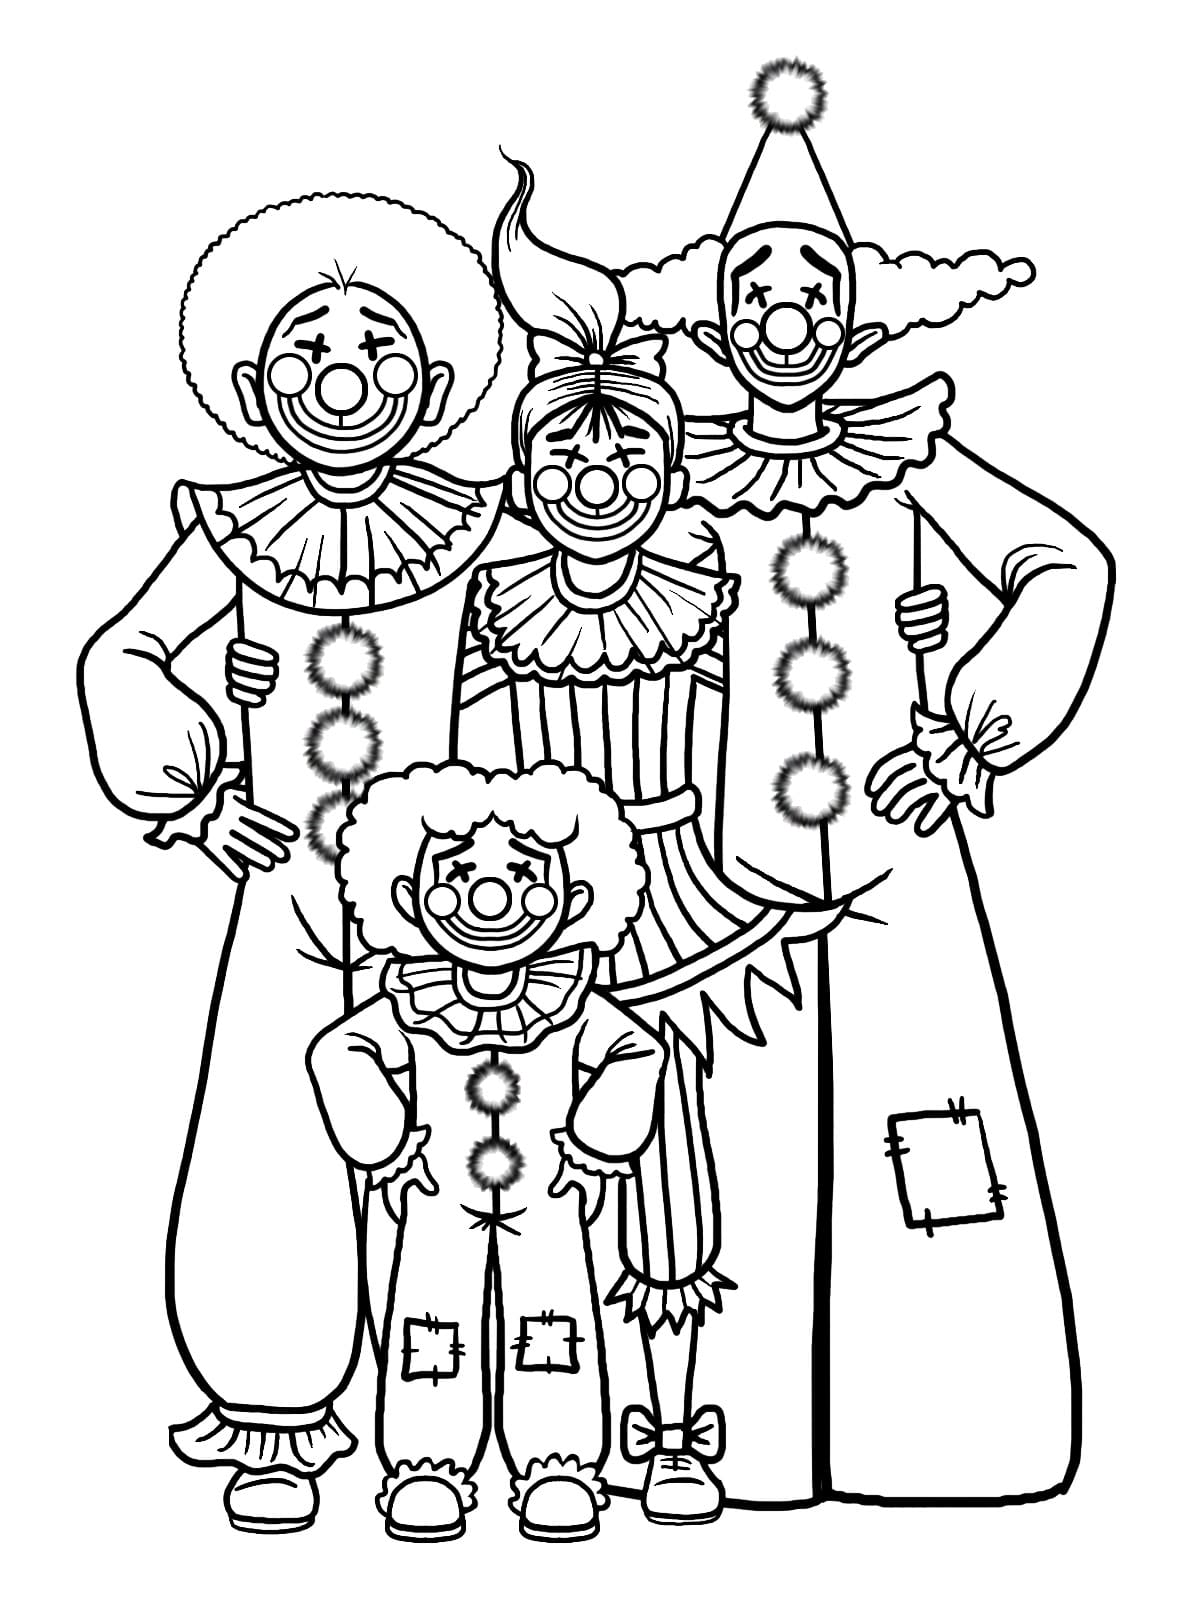 Famille de Clowns coloring page